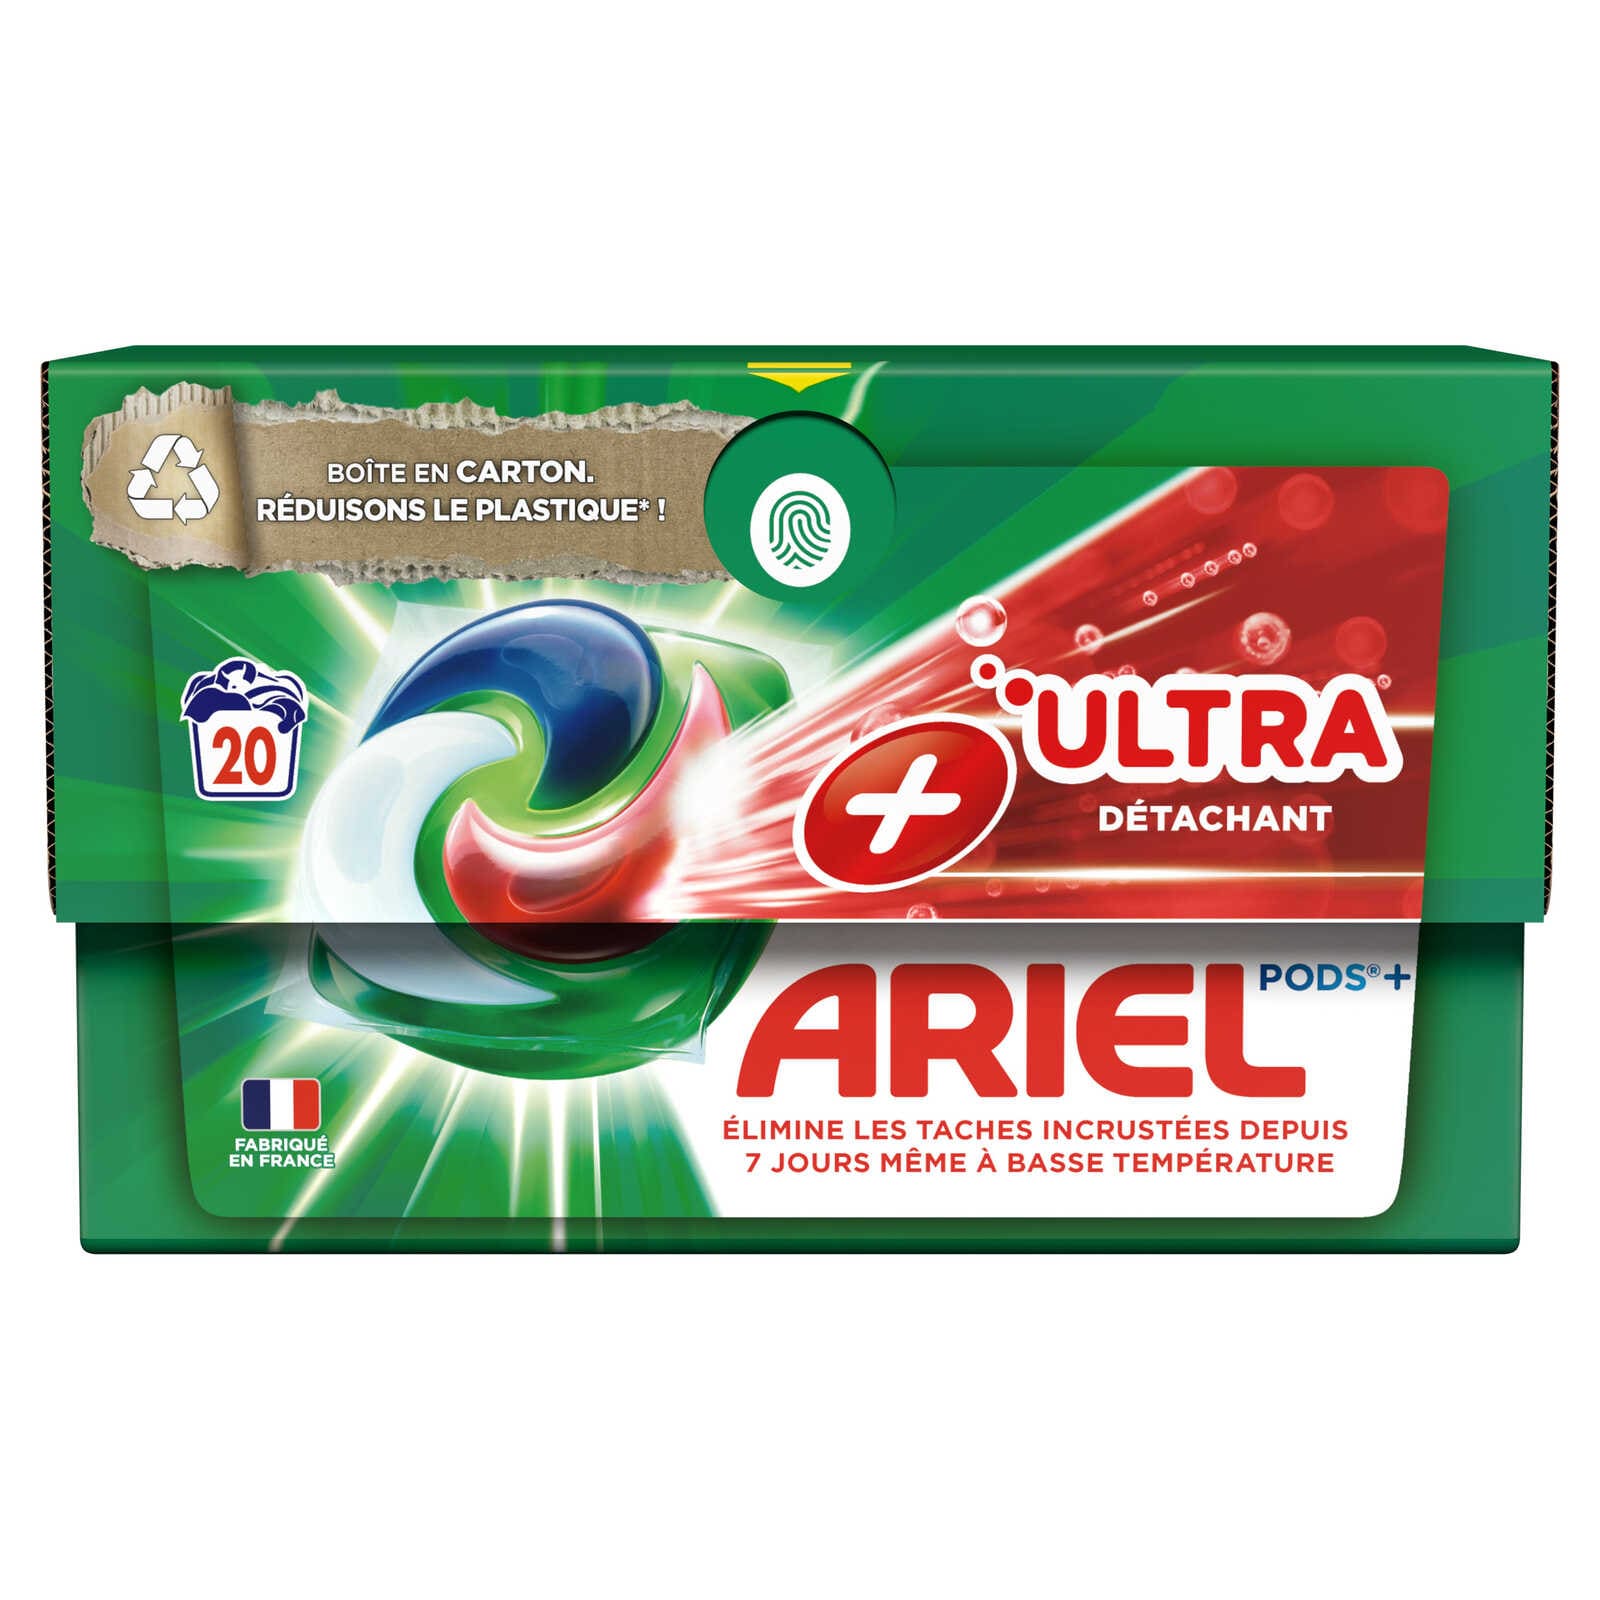 Ariel Pods + Ultra détachant hygiène impeccable! Pub 10s